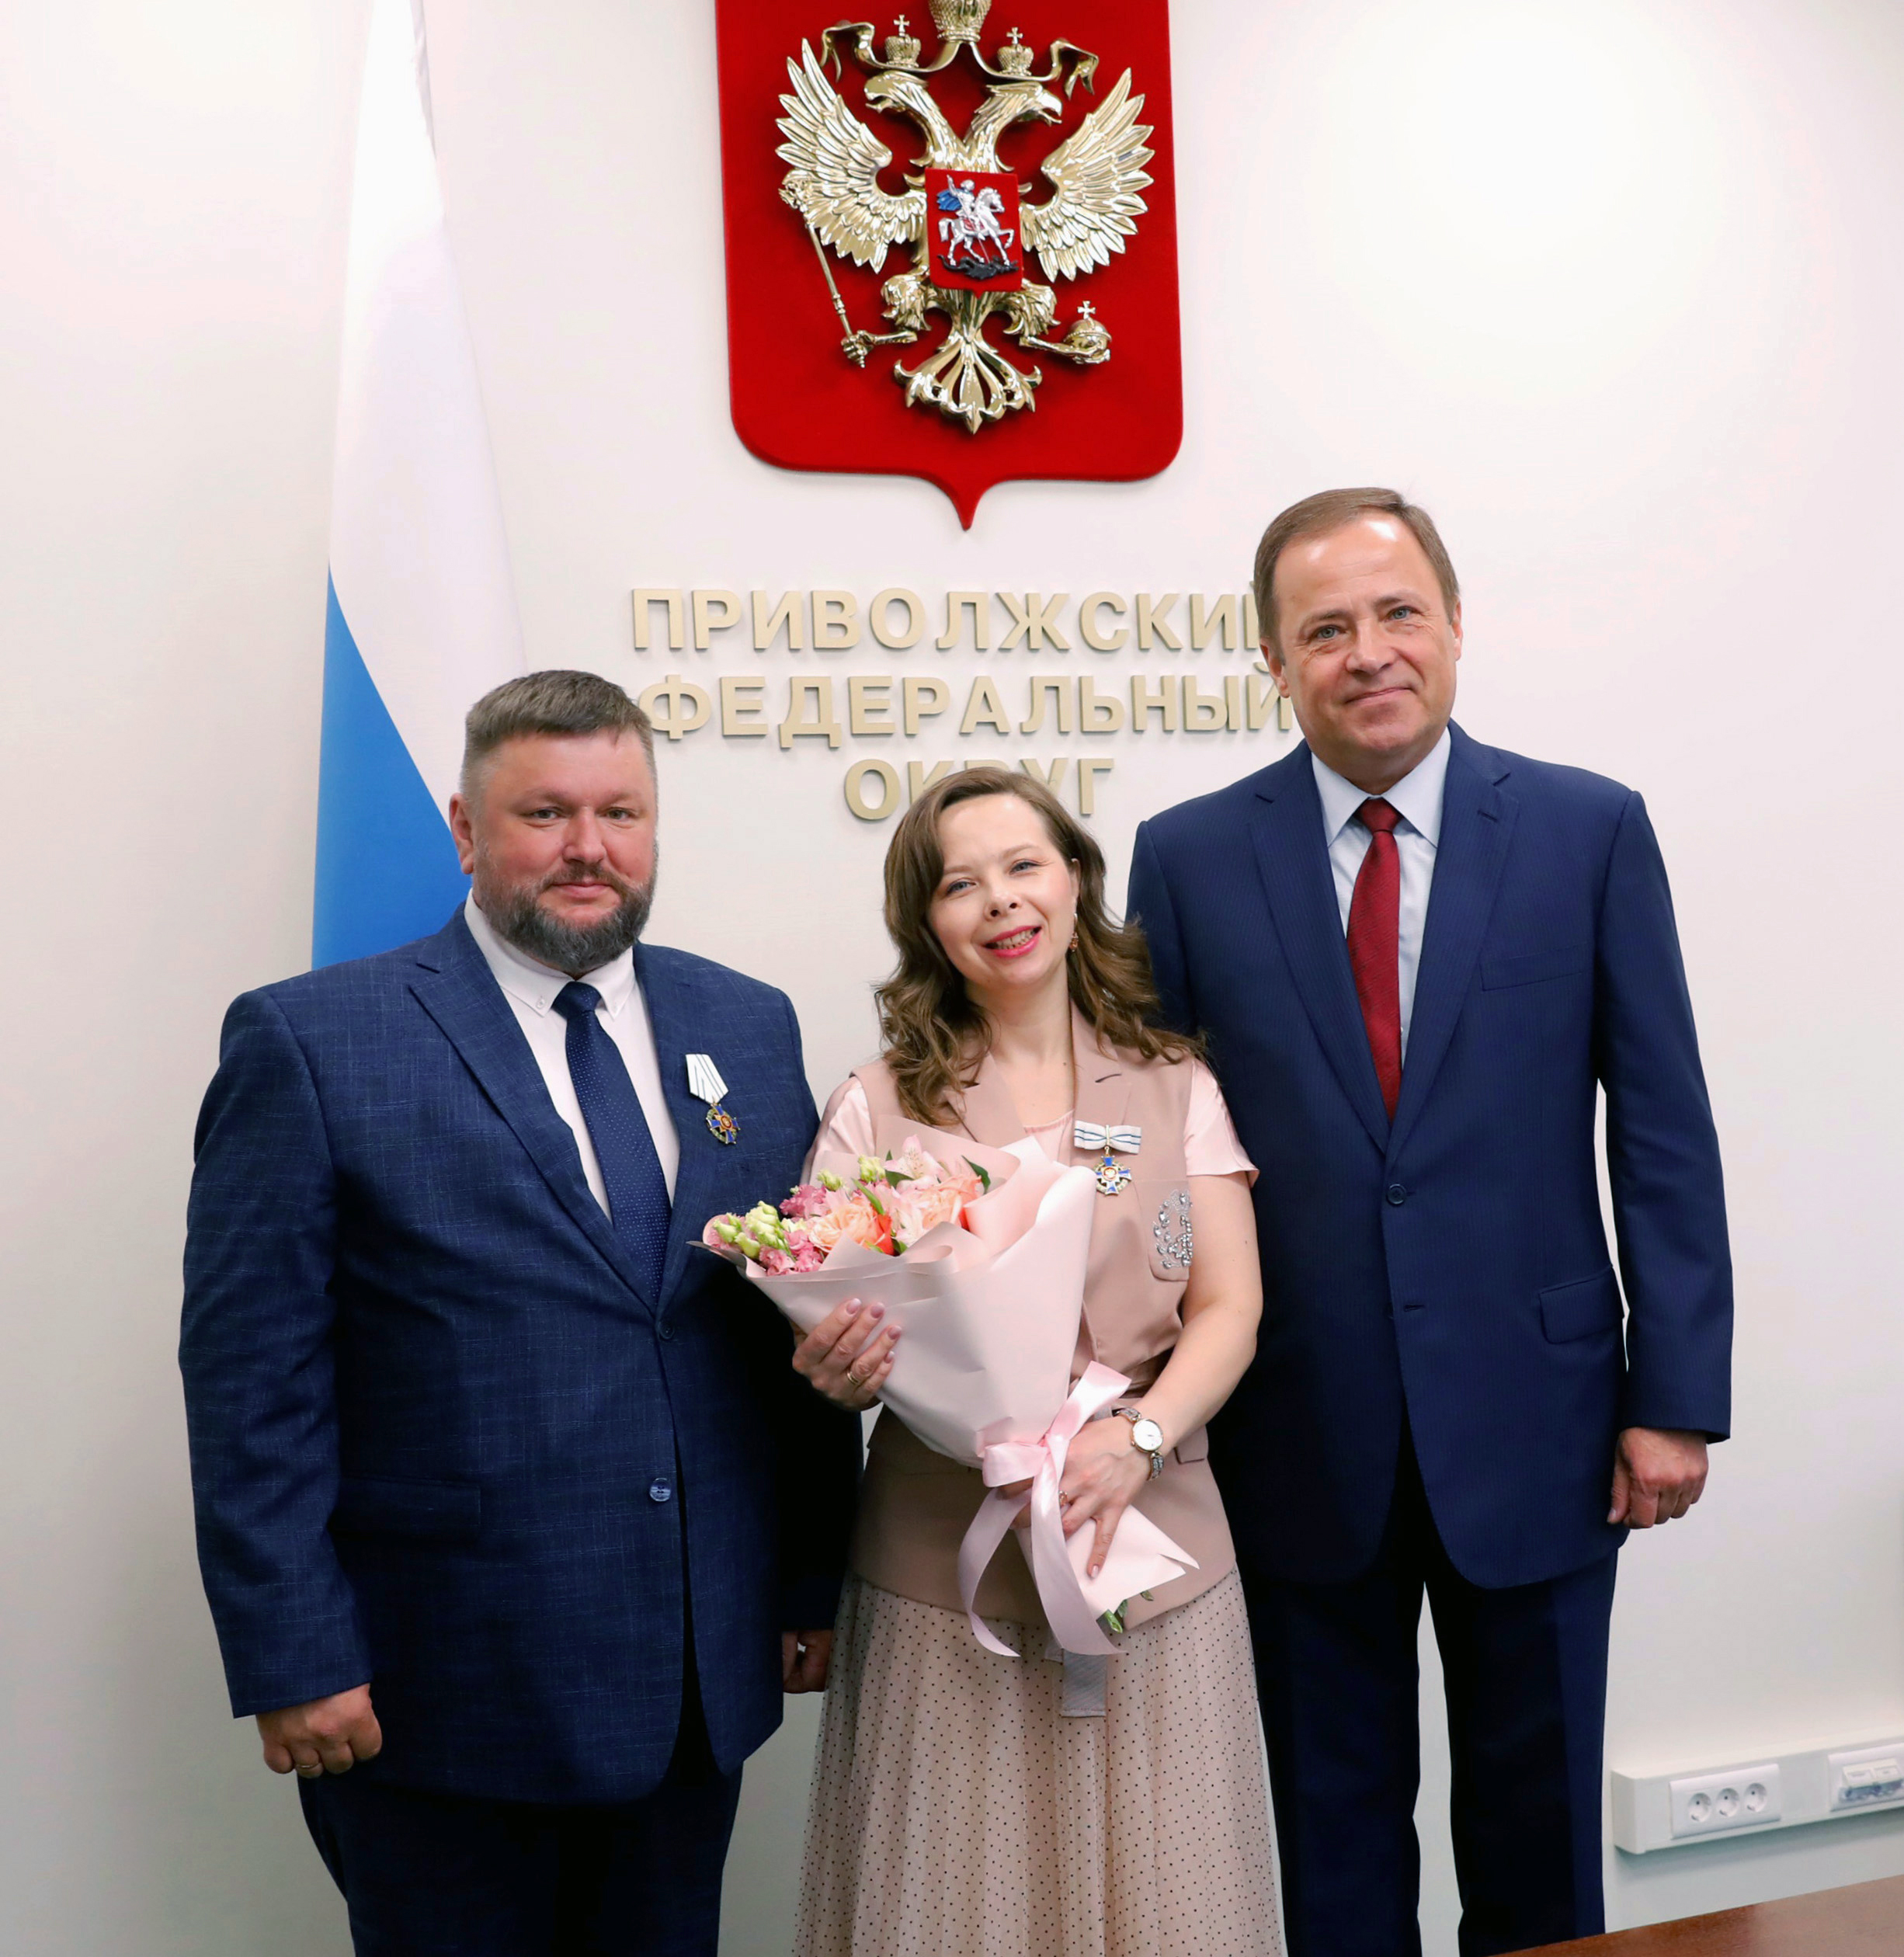 Игорь Комаров вручил многодетной семье из Кирова государственную награду Российской Федерации.